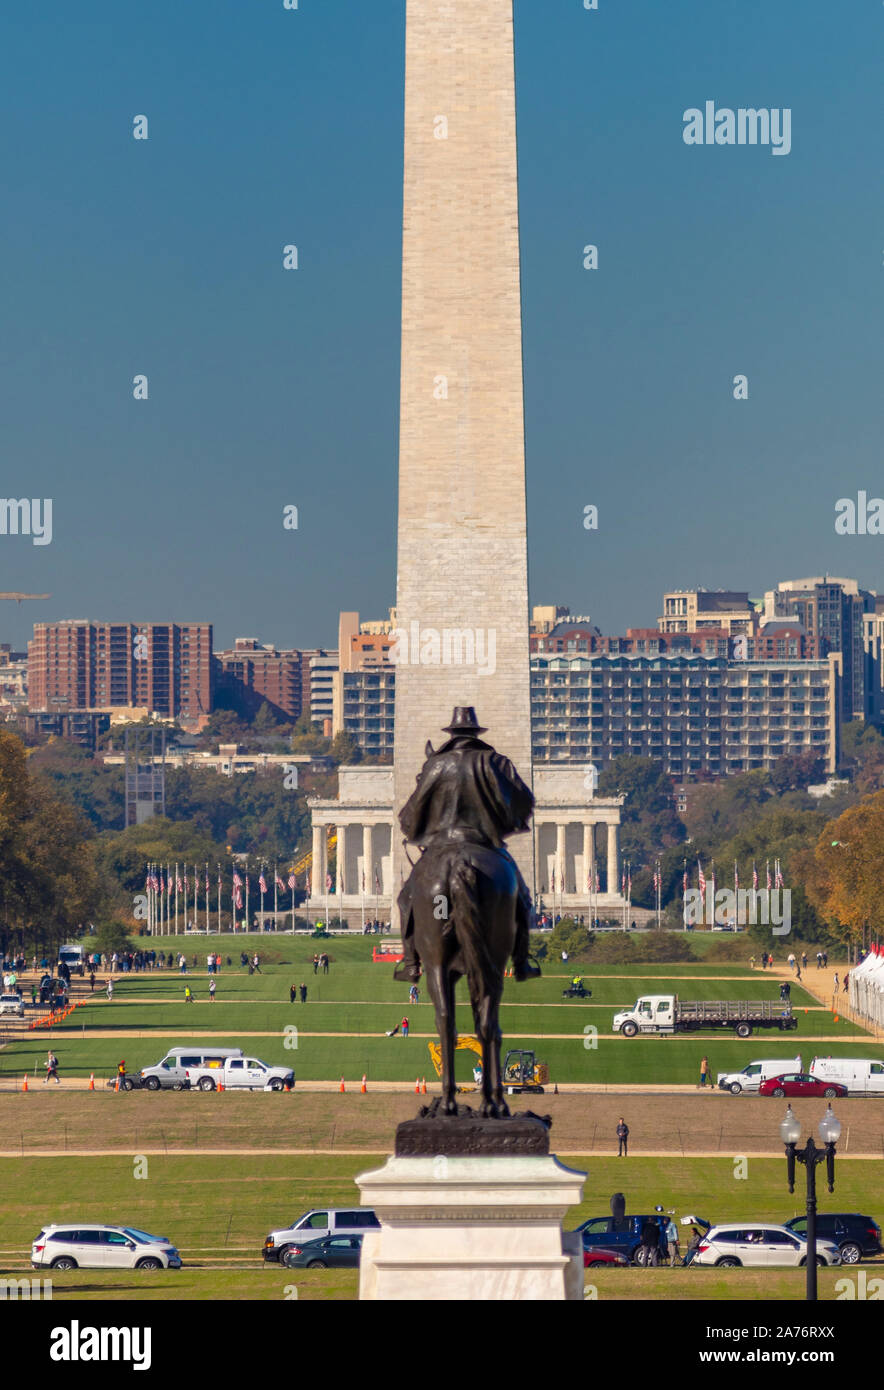 WASHINGTON, DC, USA - Le National Mall. Washington Monument à distance. Ulysses S. Grant statue, avant-plan. Banque D'Images